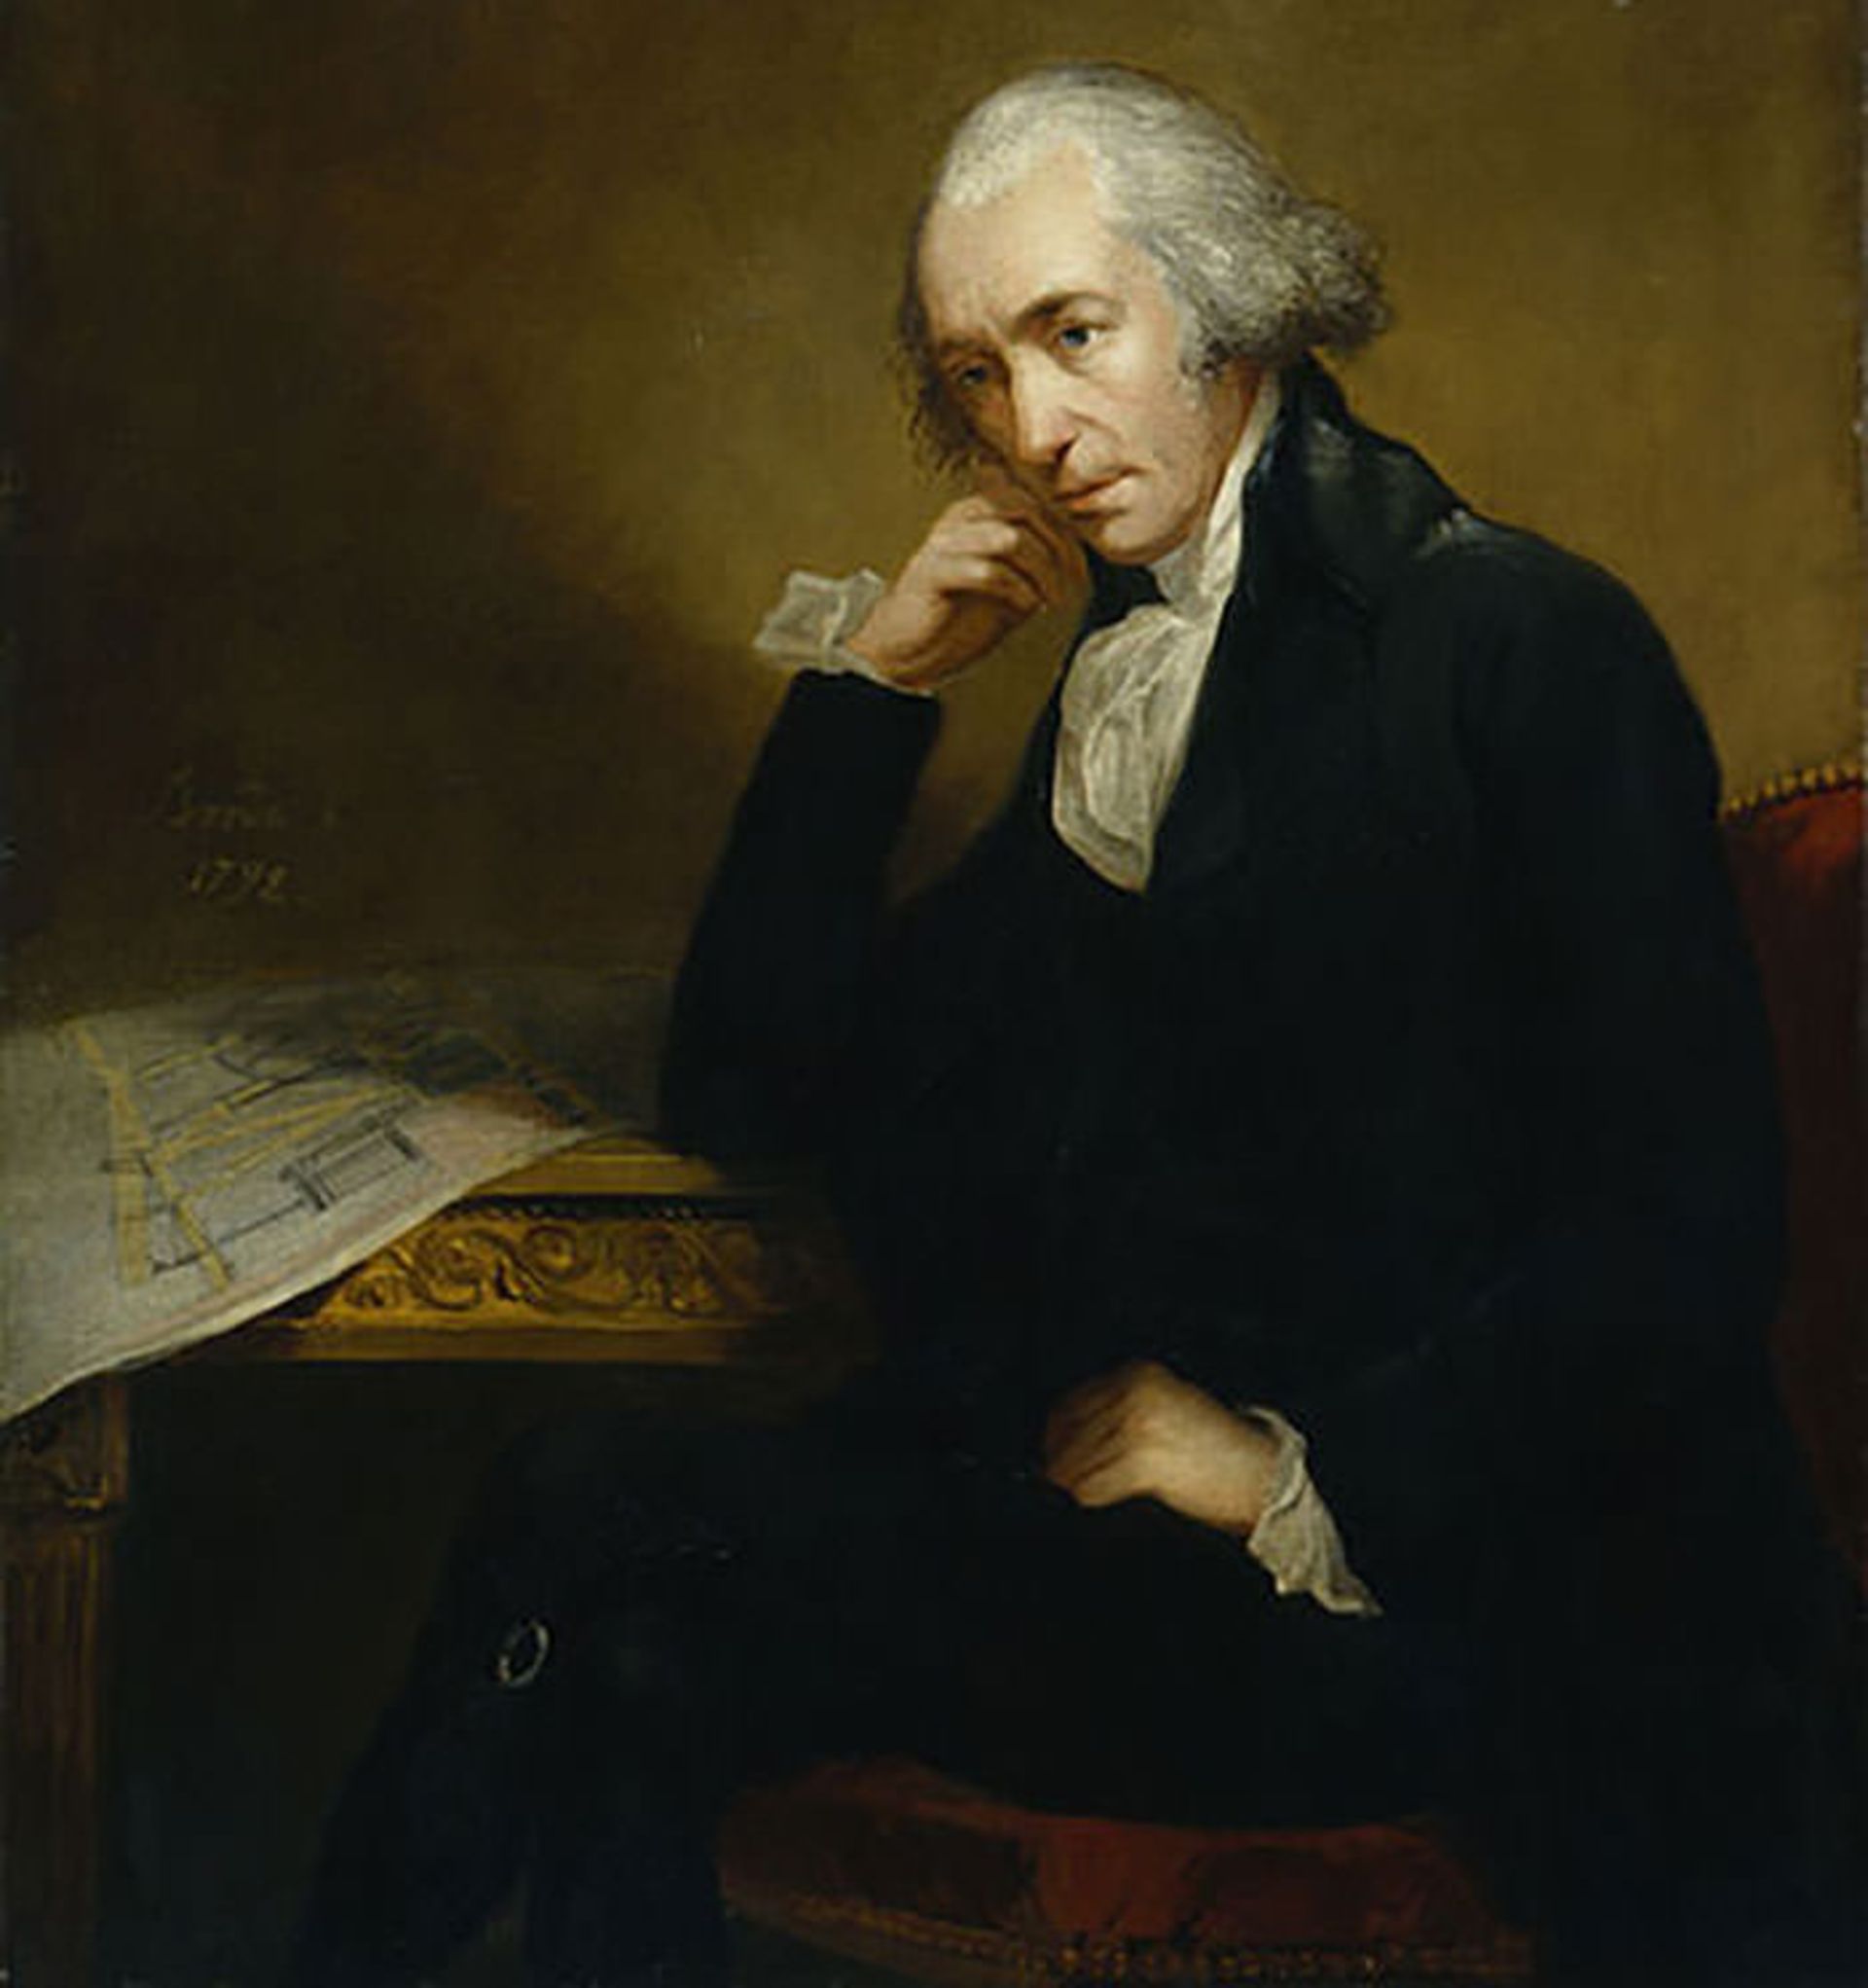 مرجع متخصصين ايران جيمز وات / James Watt